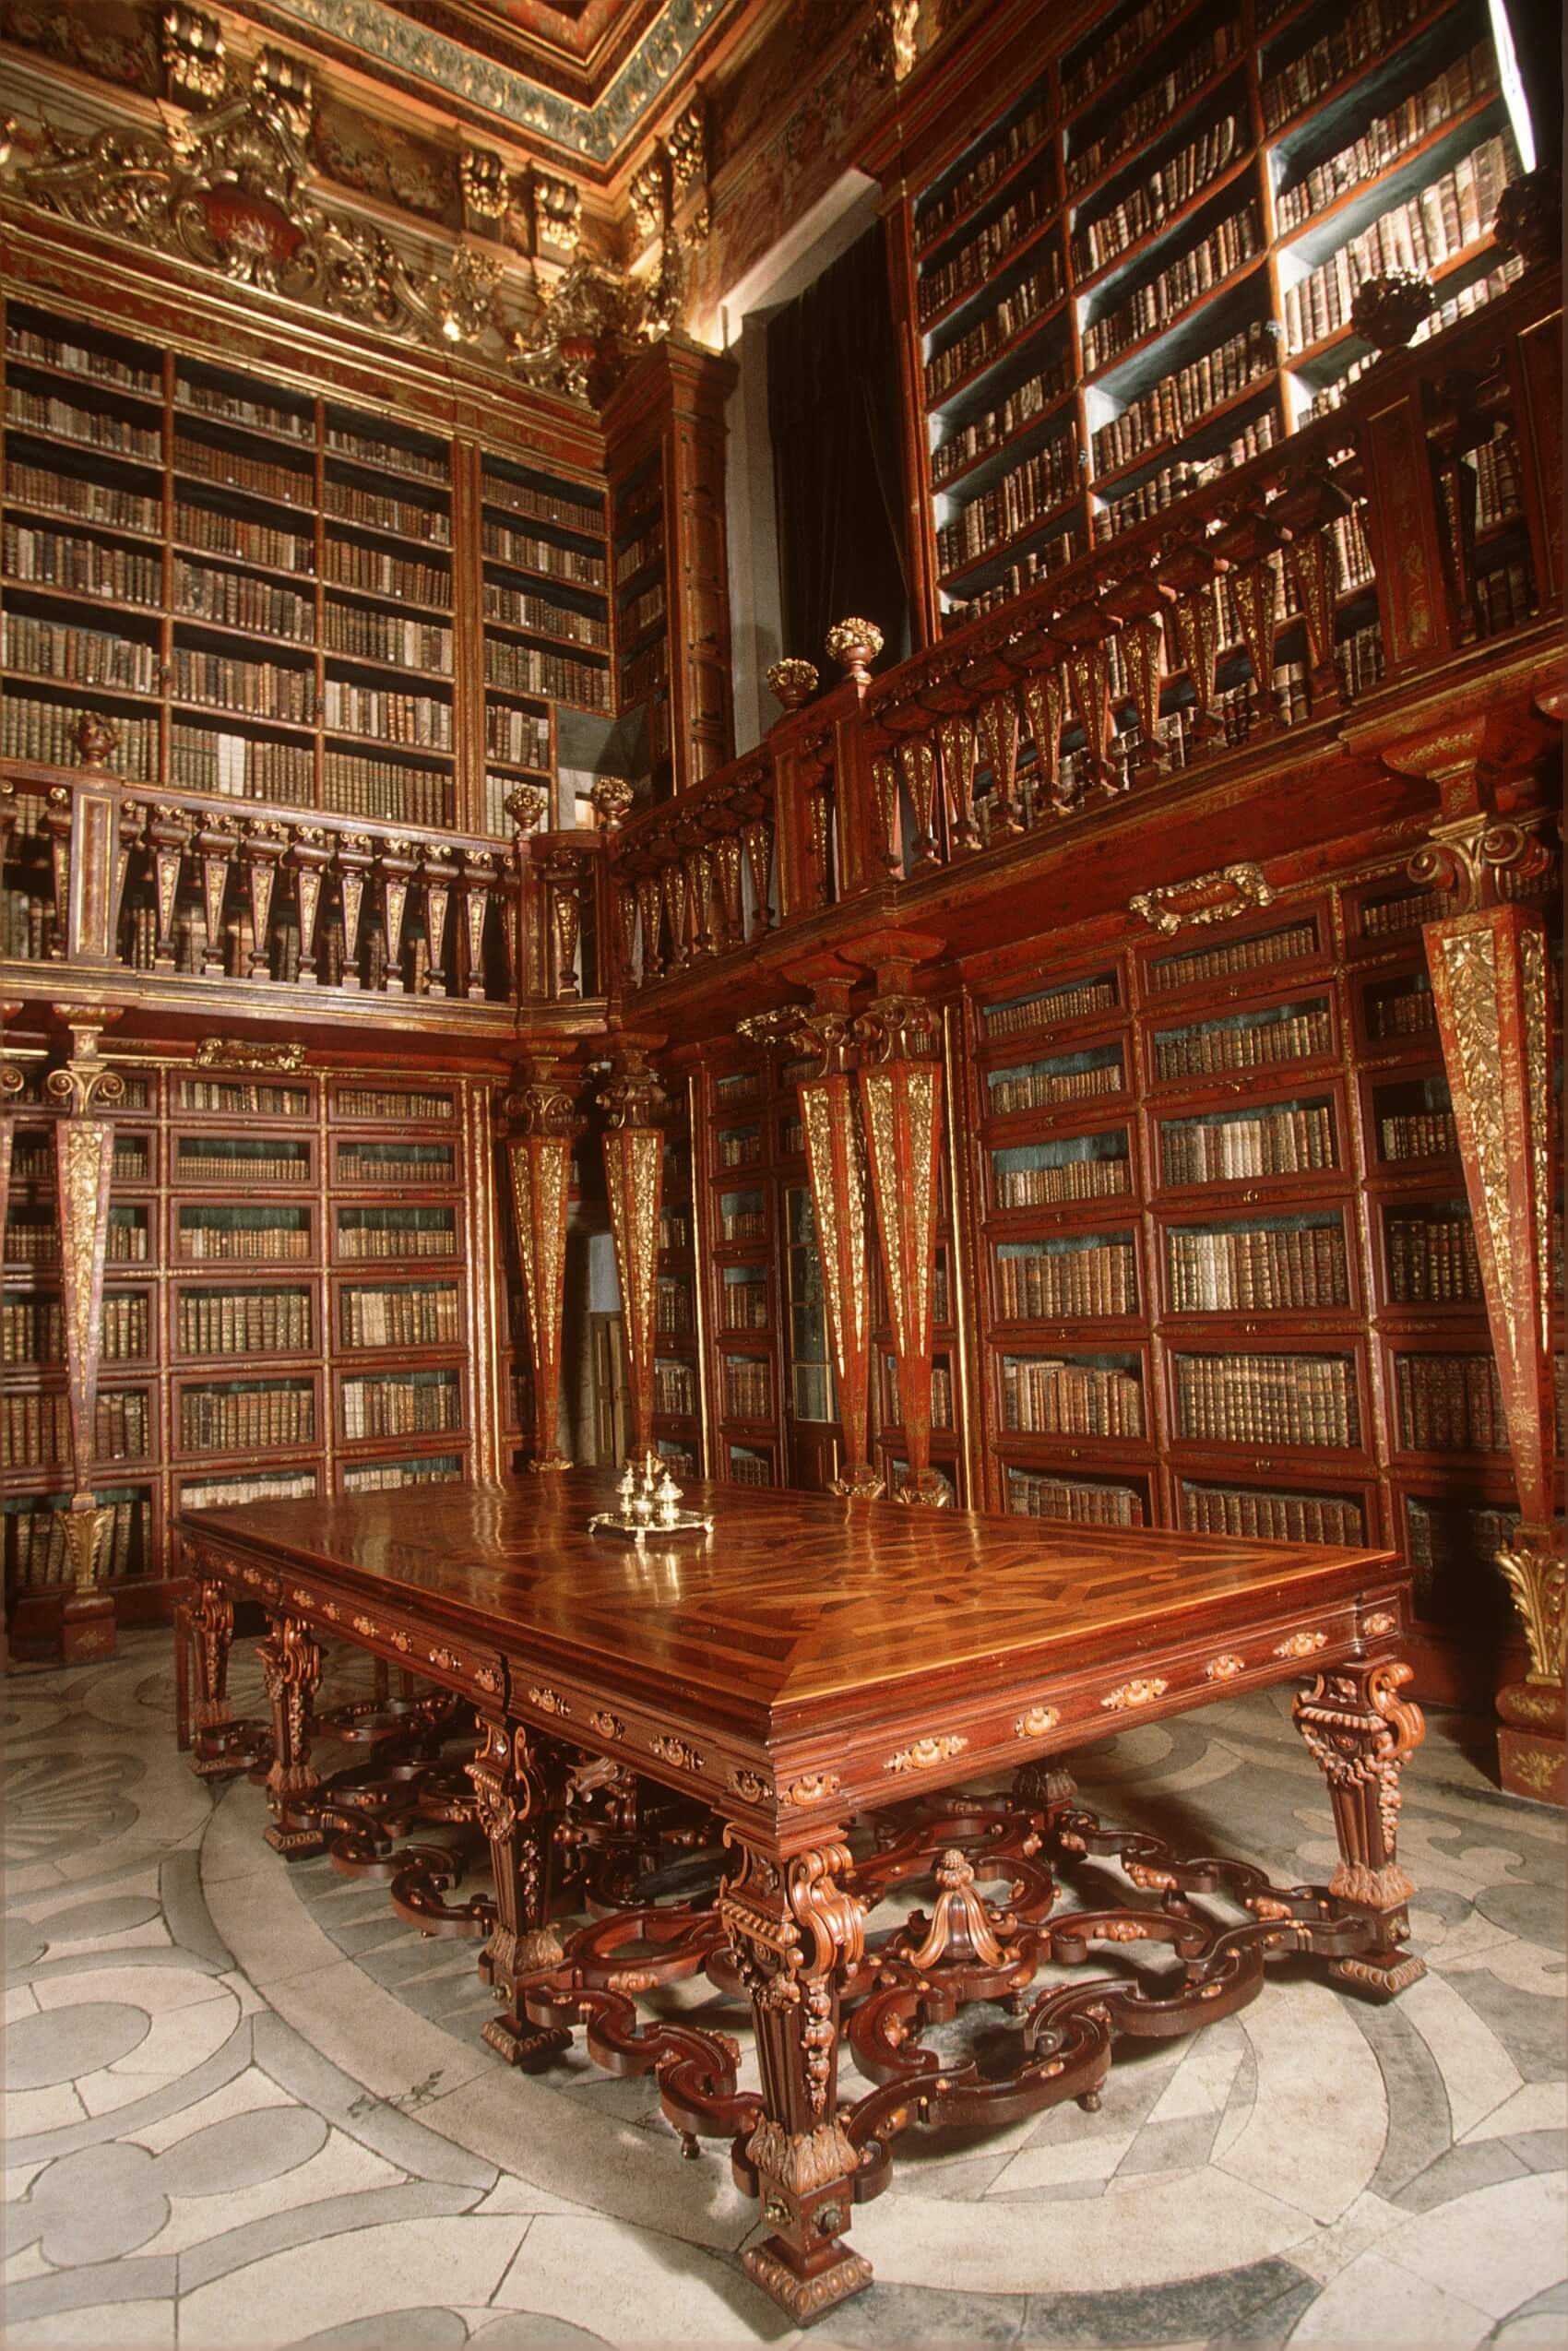 Turismo Centro de Portugal - Coimbra Historical City Tour library shelfs 